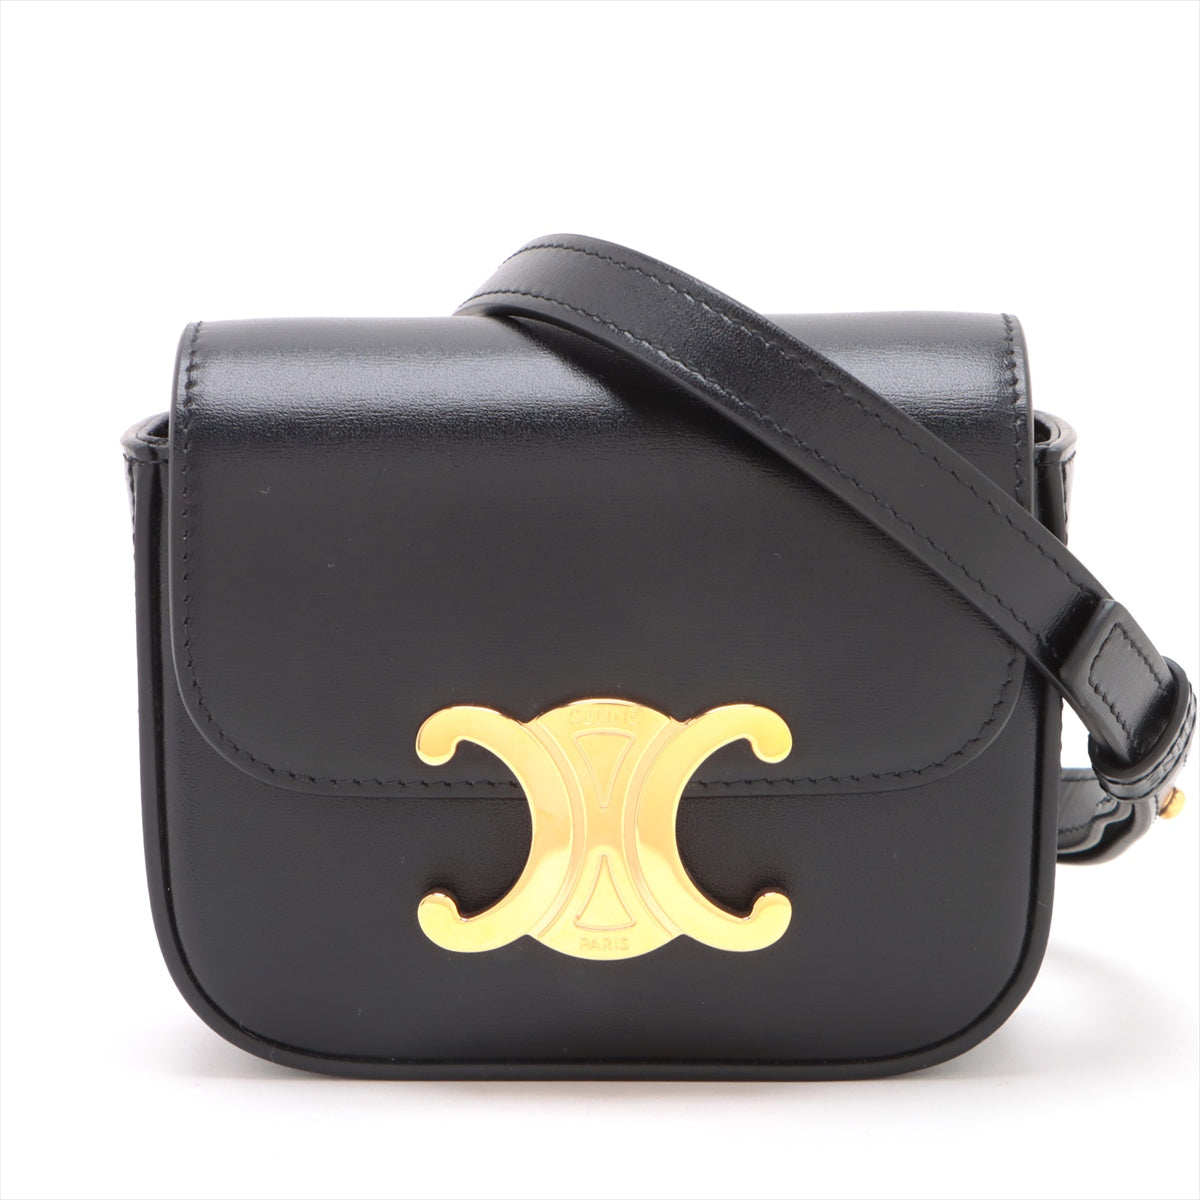 Celine f Mini Clood Leather Shoulder Bag Black